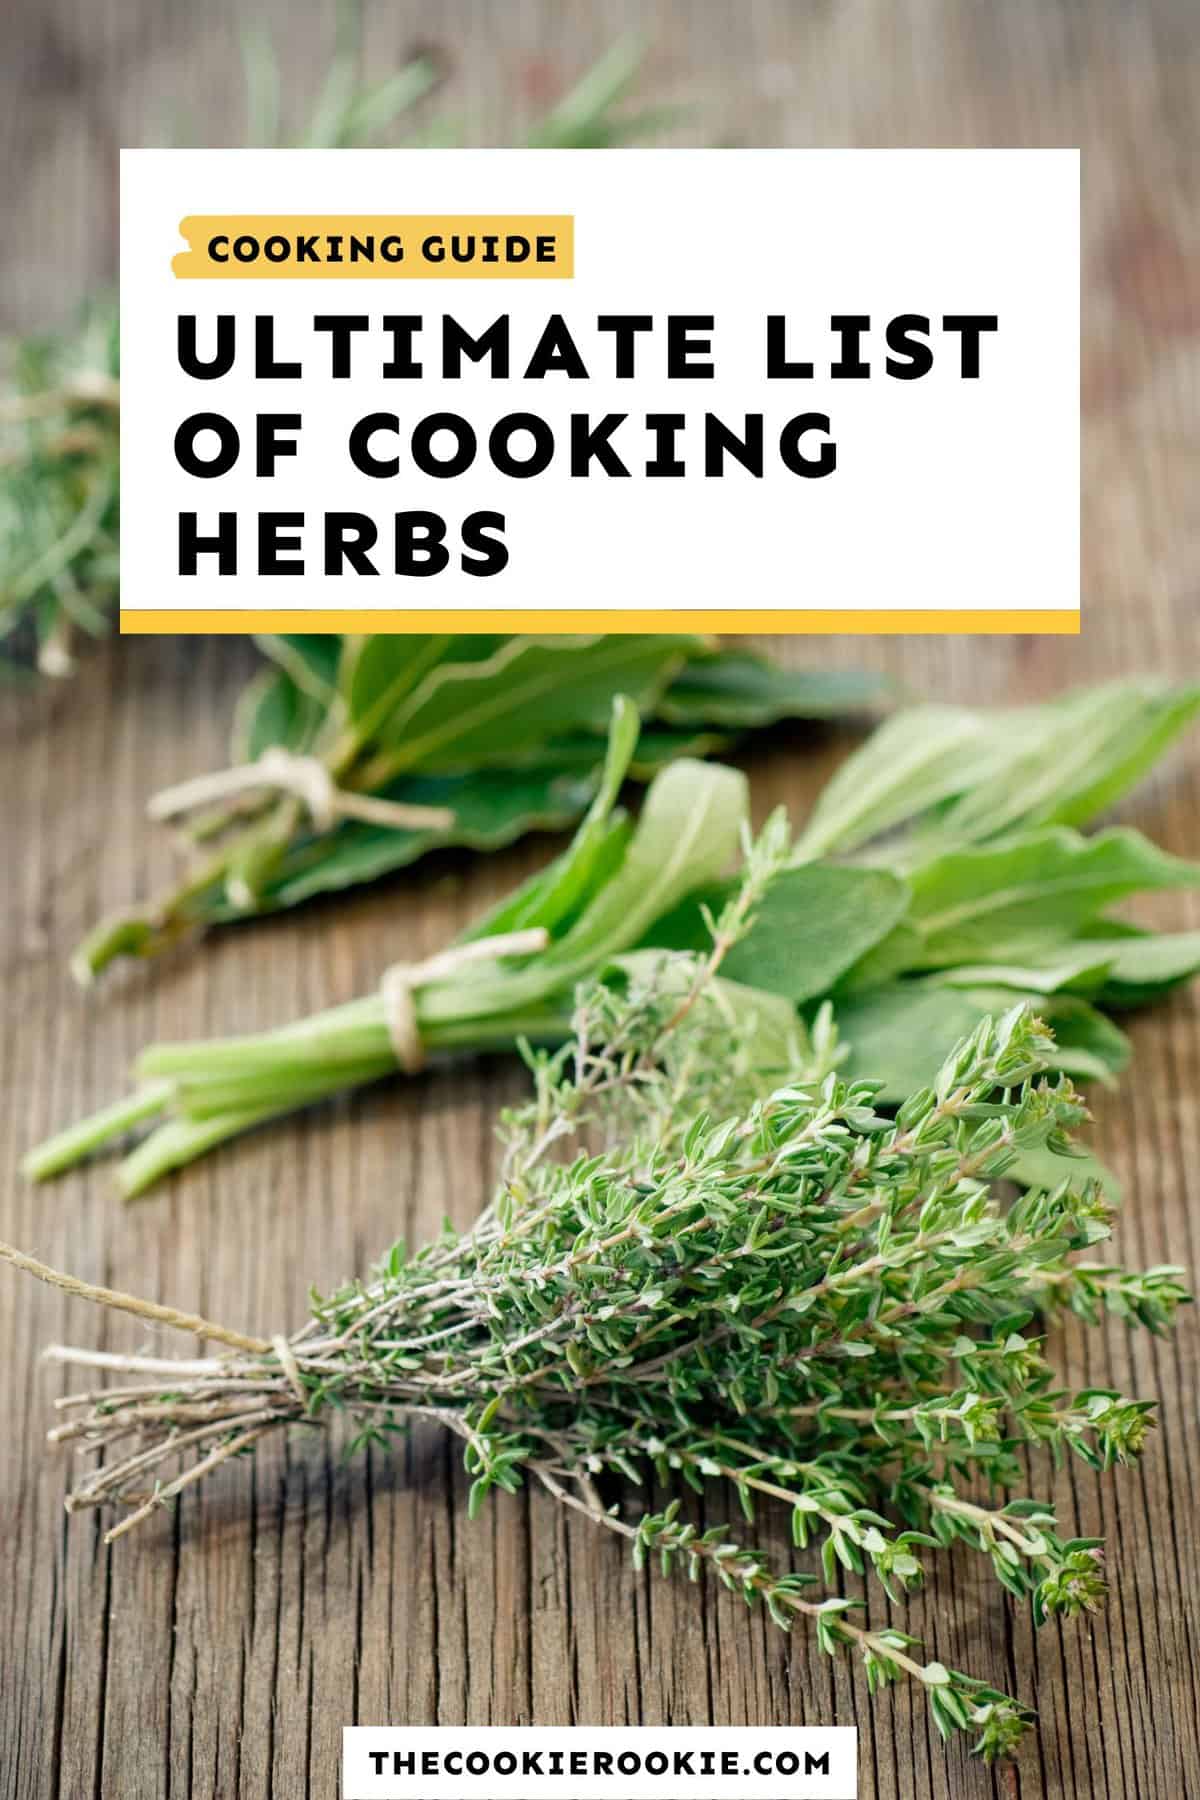 https://www.thecookierookie.com/wp-content/uploads/2022/07/cooking-herbs.jpg